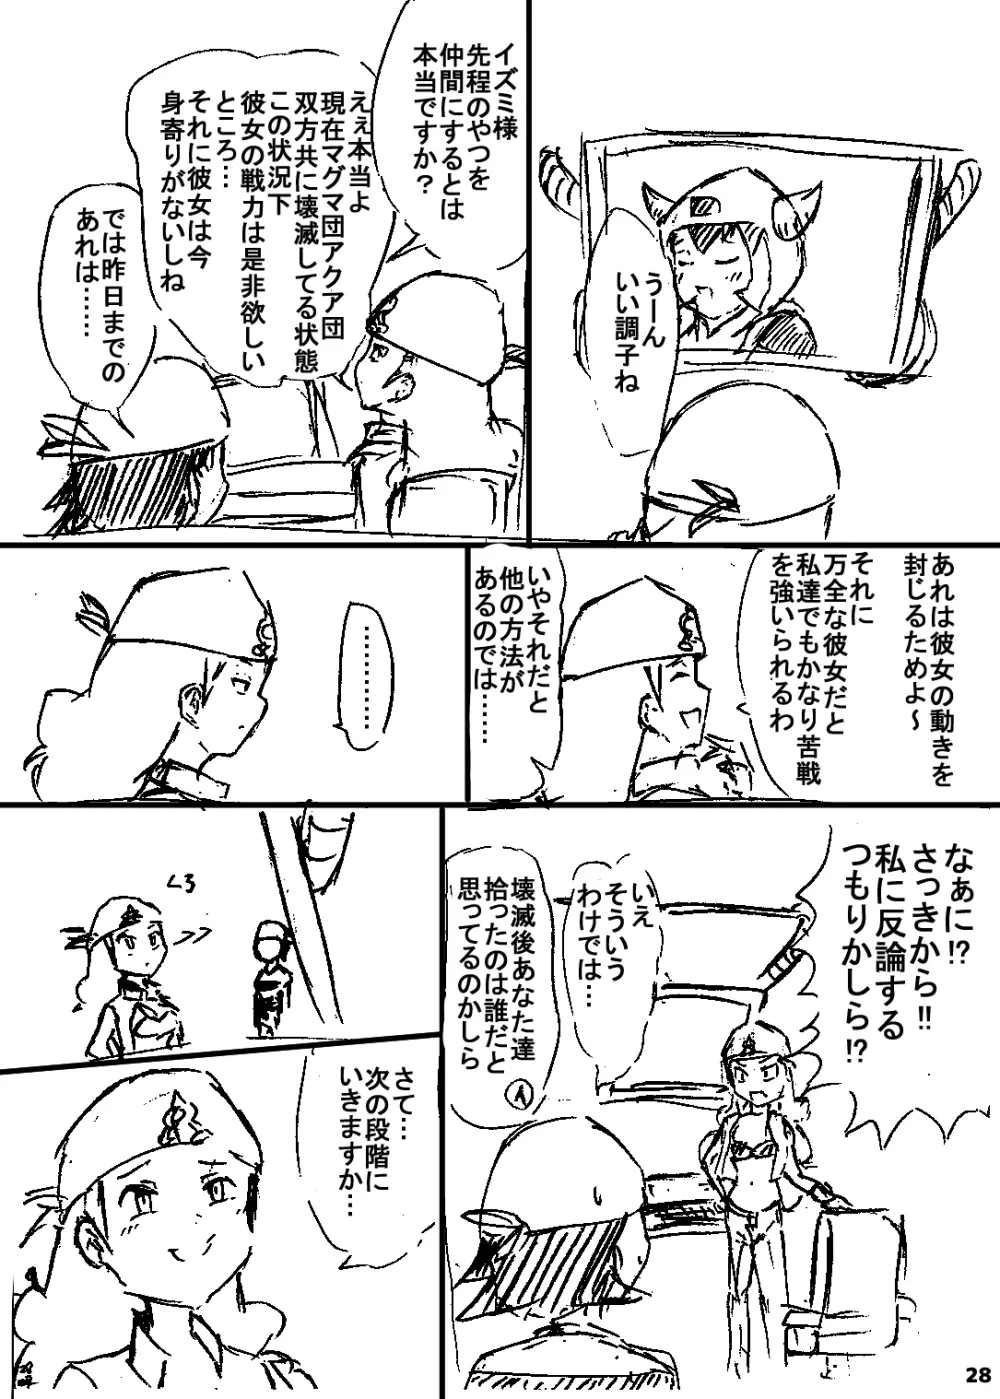 ポケスペカガリ肥満化漫画 27ページ